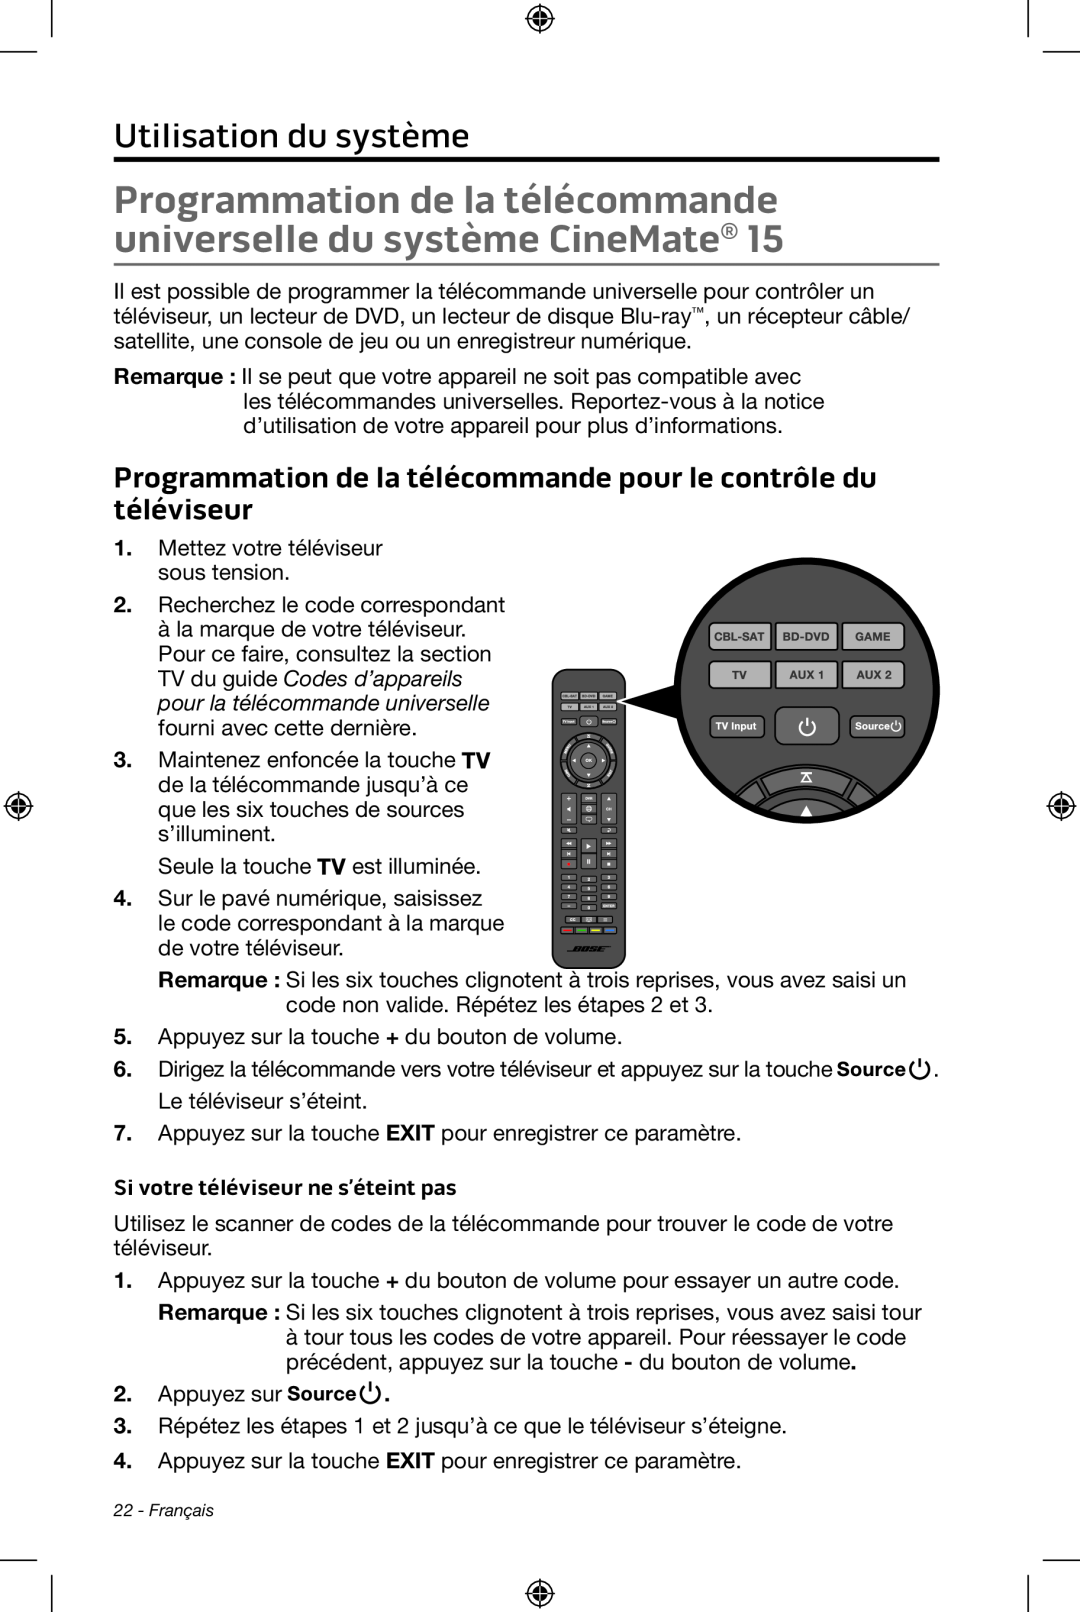 Bose CineMate 15/10 manual Utilisation du système, Si votre téléviseur ne s’éteint pas 